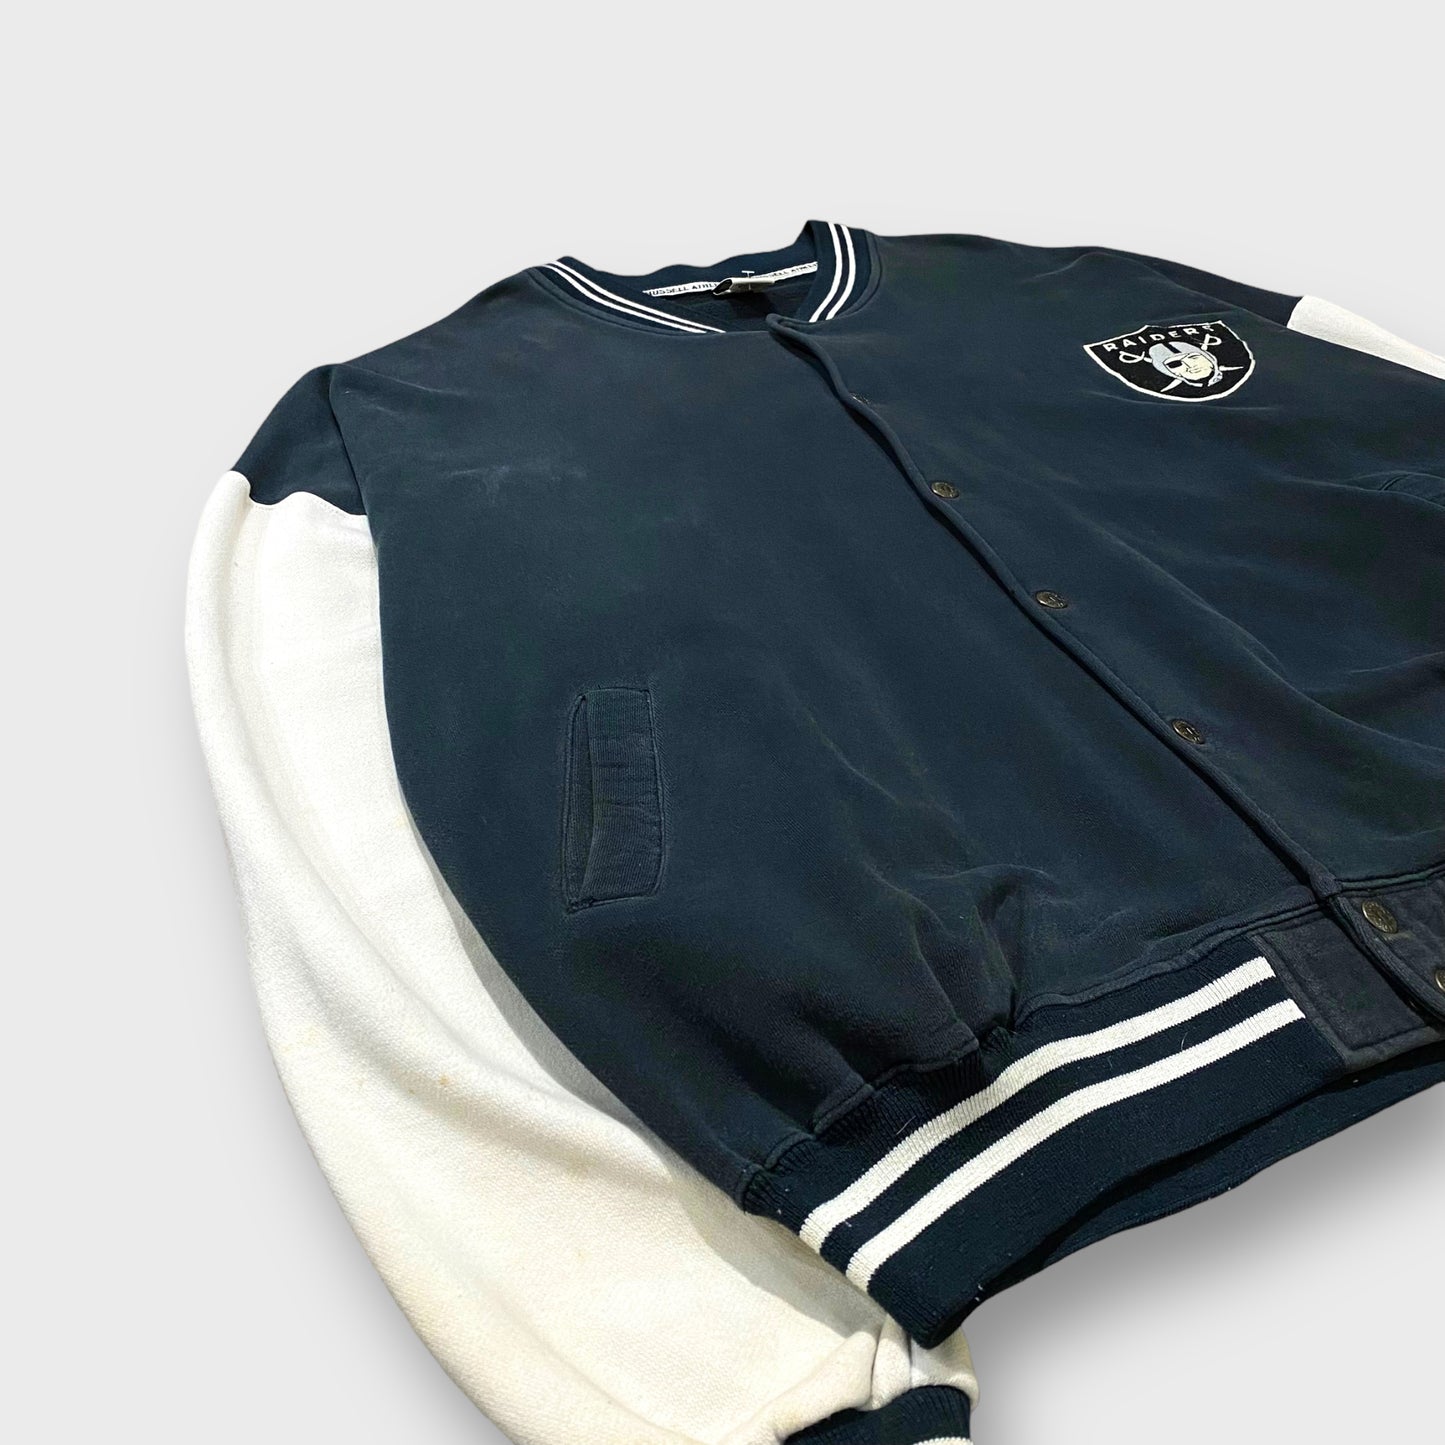 "Las Vegas Raiders" Cotton stadium jacket